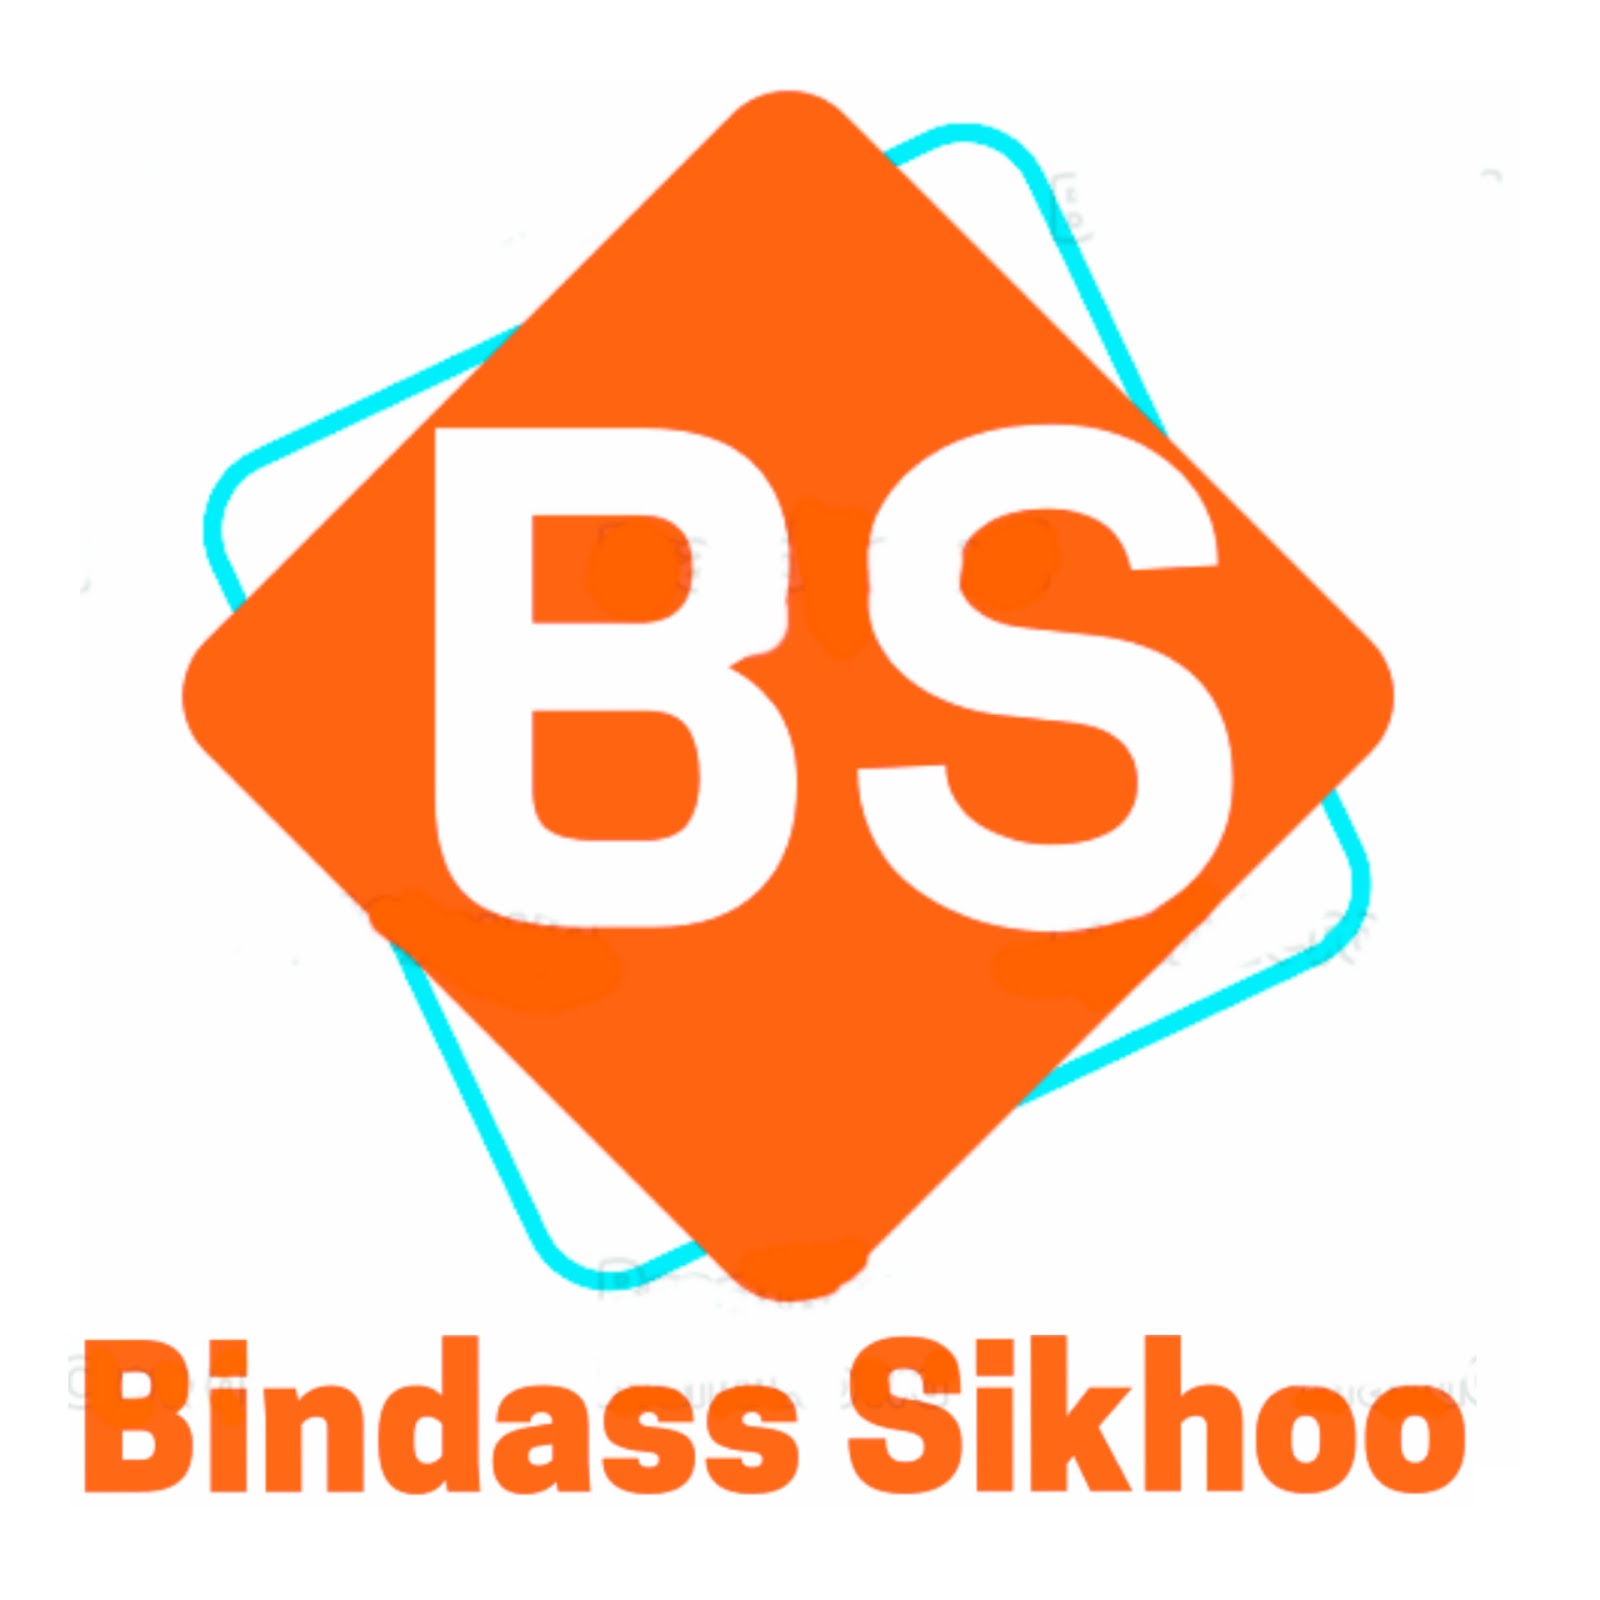 Bindass Sikhoo